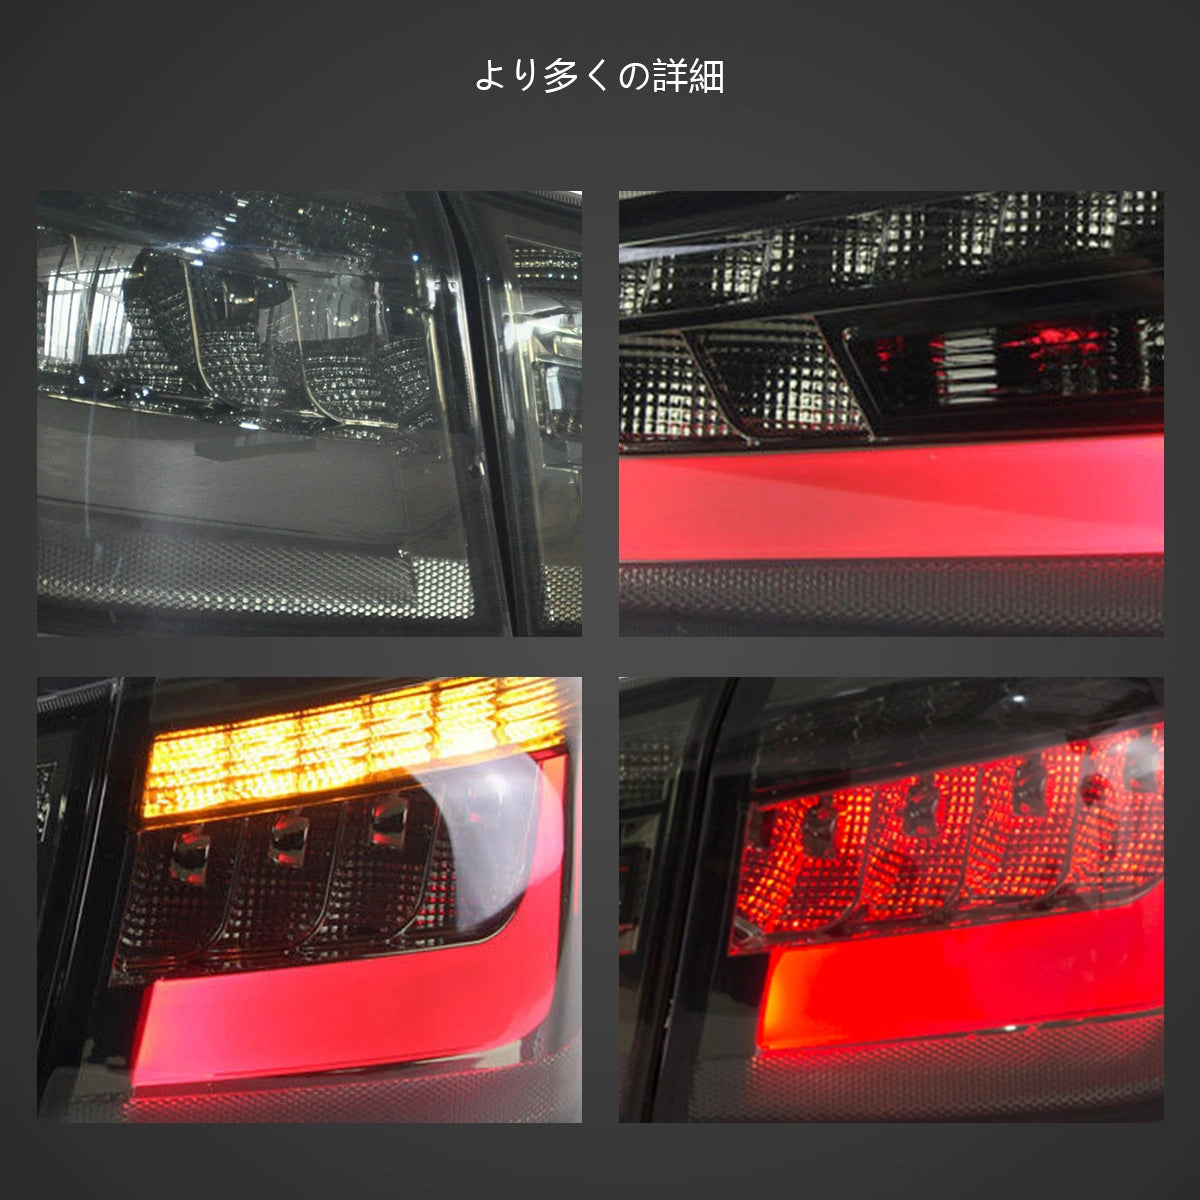 12-22 Mitsubishi ASX Vland LEDテールランプ(アンバーターンシグナル)